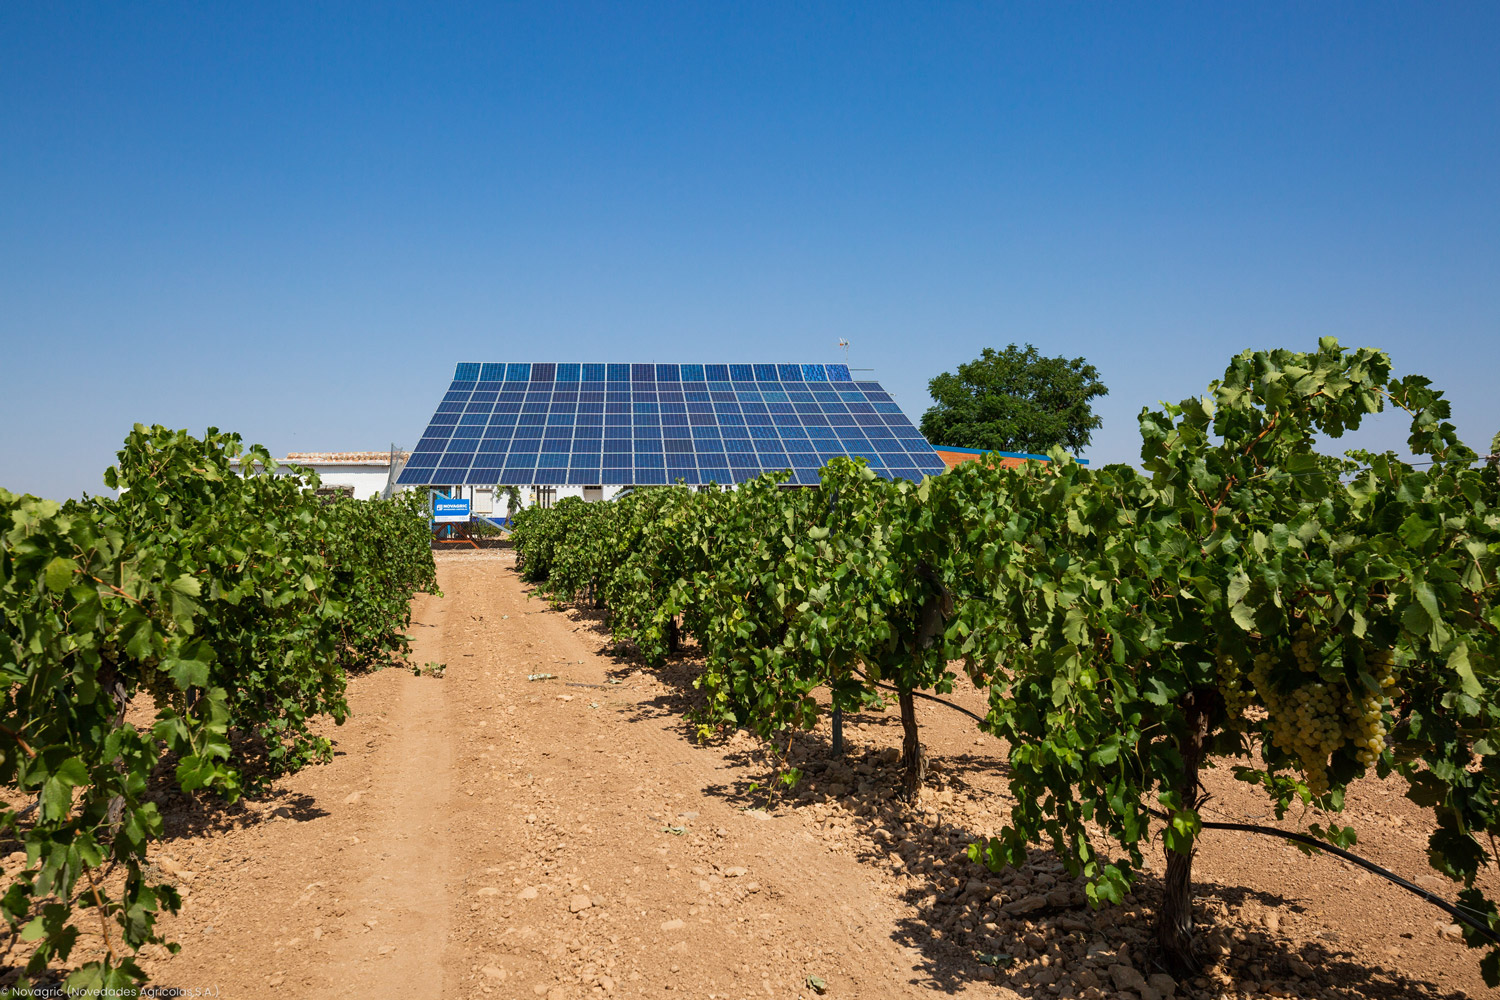 Novagric instaló un sistema de riego solar en viñedos de Ciudad Real, reduciendo costes y huella de carbono, con eficiencia hídrica mejorada.